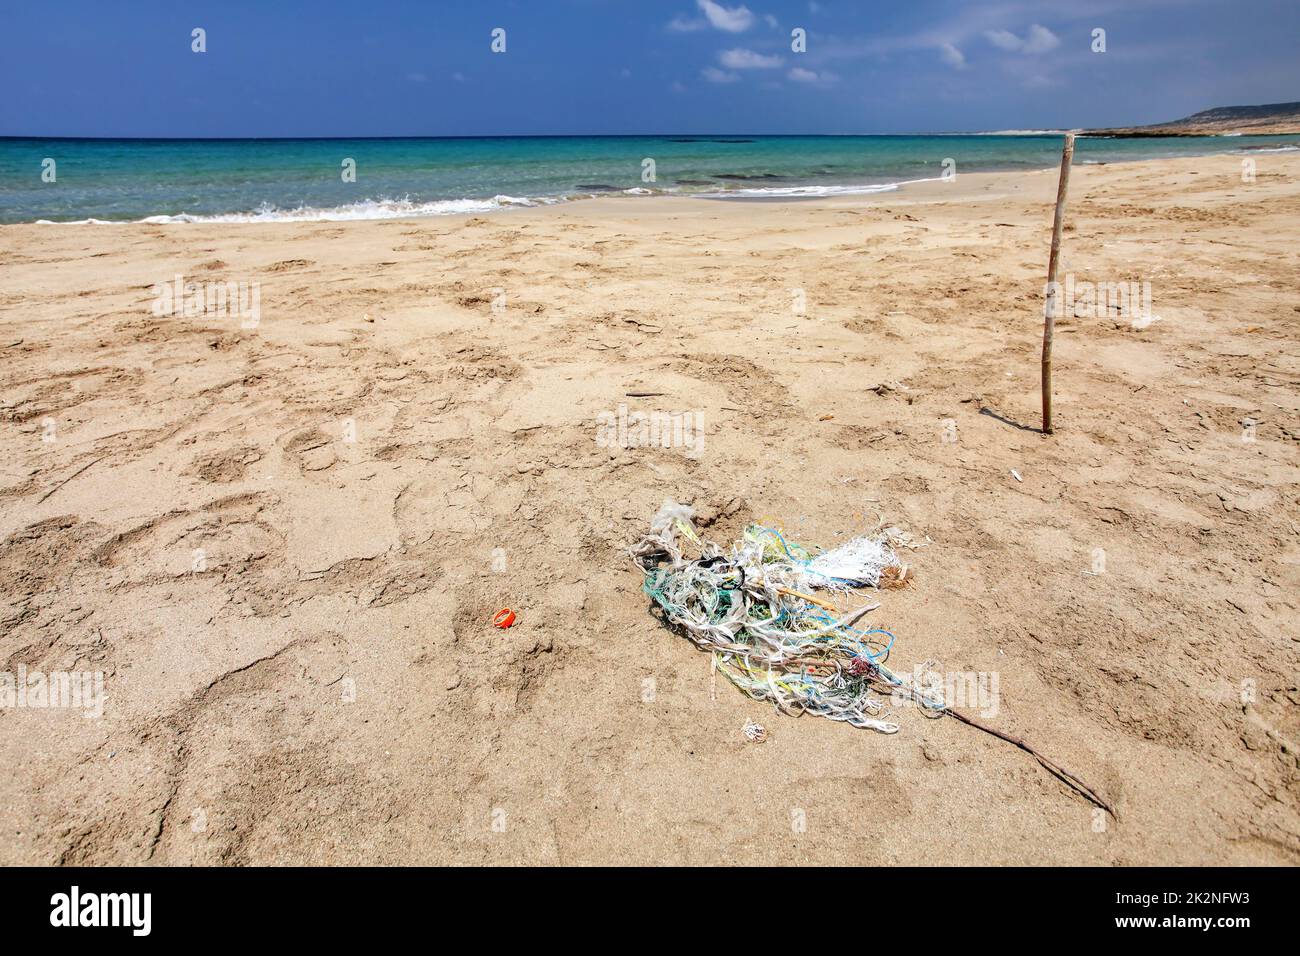 Perfekter leerer, unberührter Strand, kleiner Müllhaufen (verwickelte Plastikseile) auf feinem Sand, ruhiges Meer im Hintergrund. Ozeanabfallkonzept. Karpass, Nordzypern Stockfoto